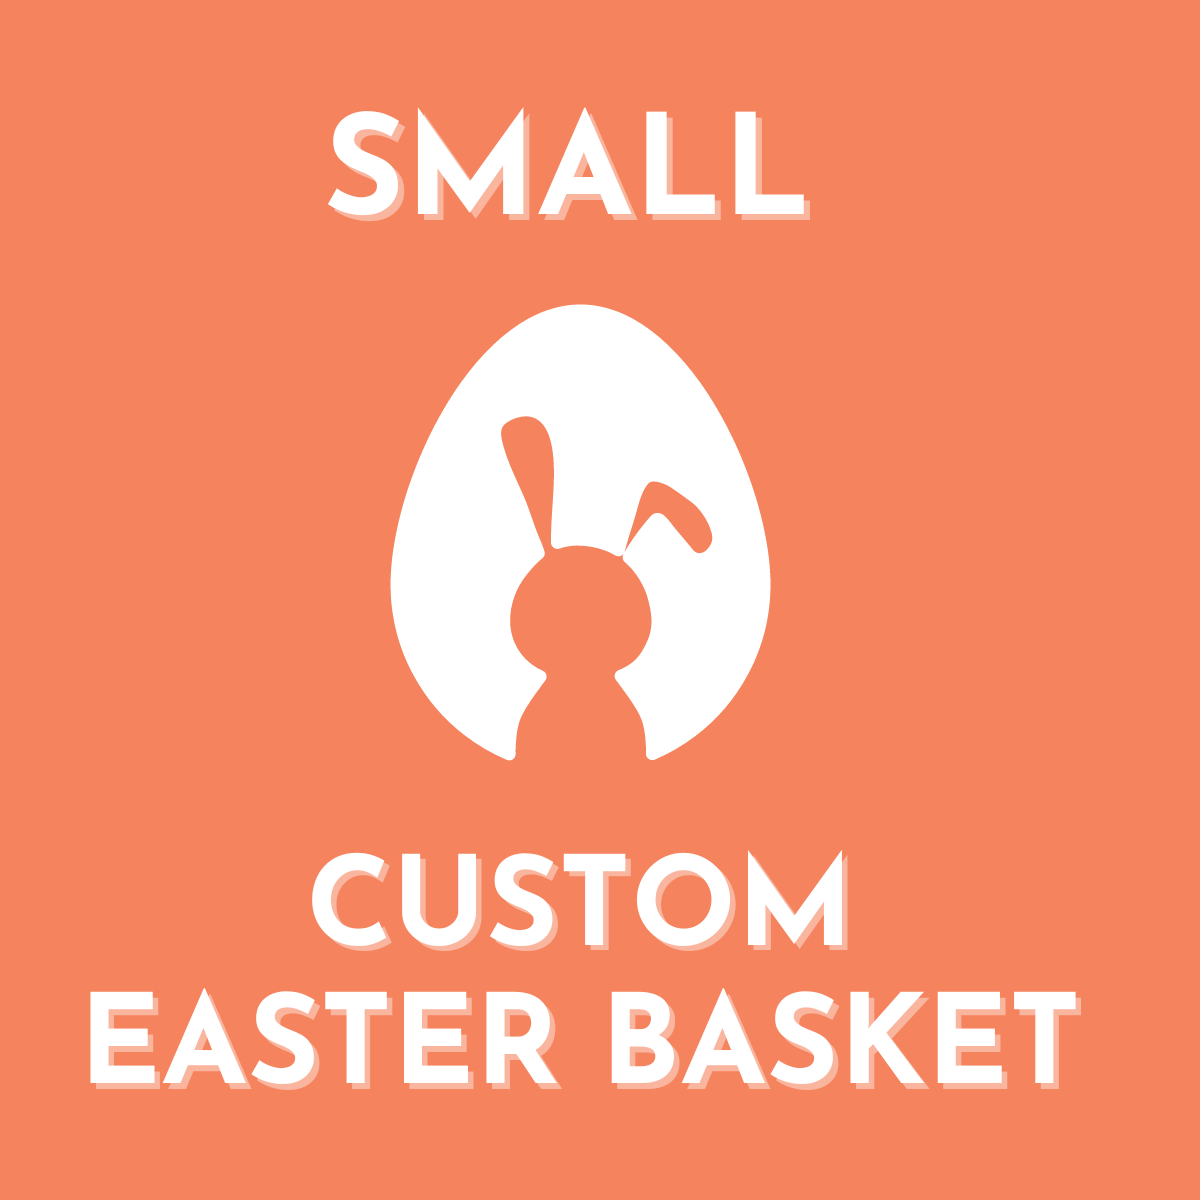 Small Custom Easter Basket $30